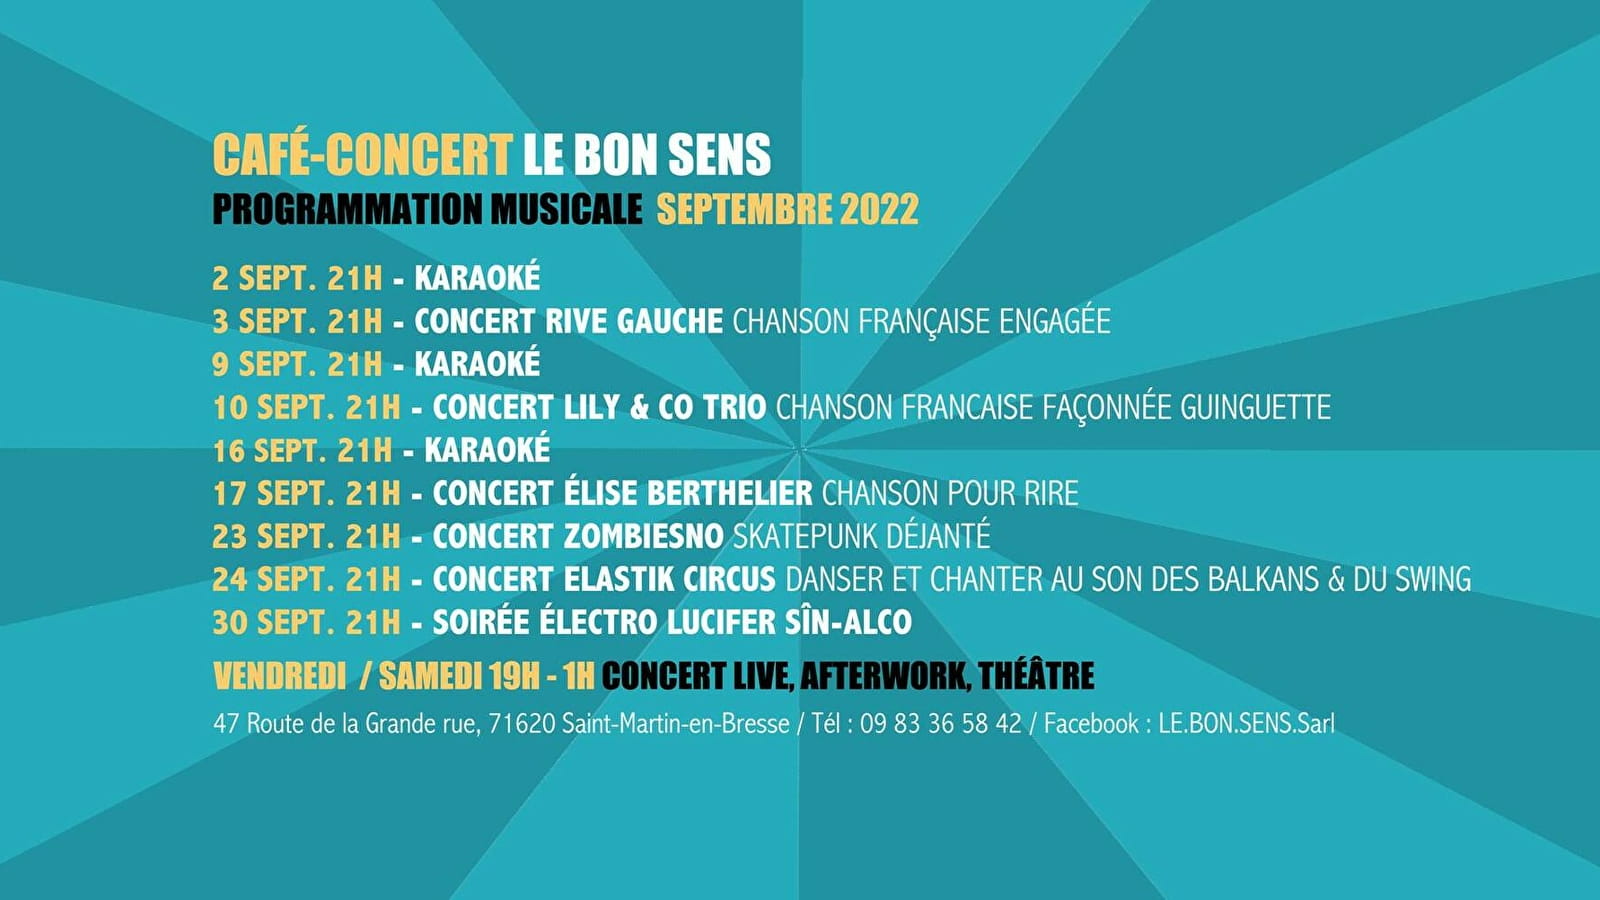 Concerts live et after work au Bon Sens